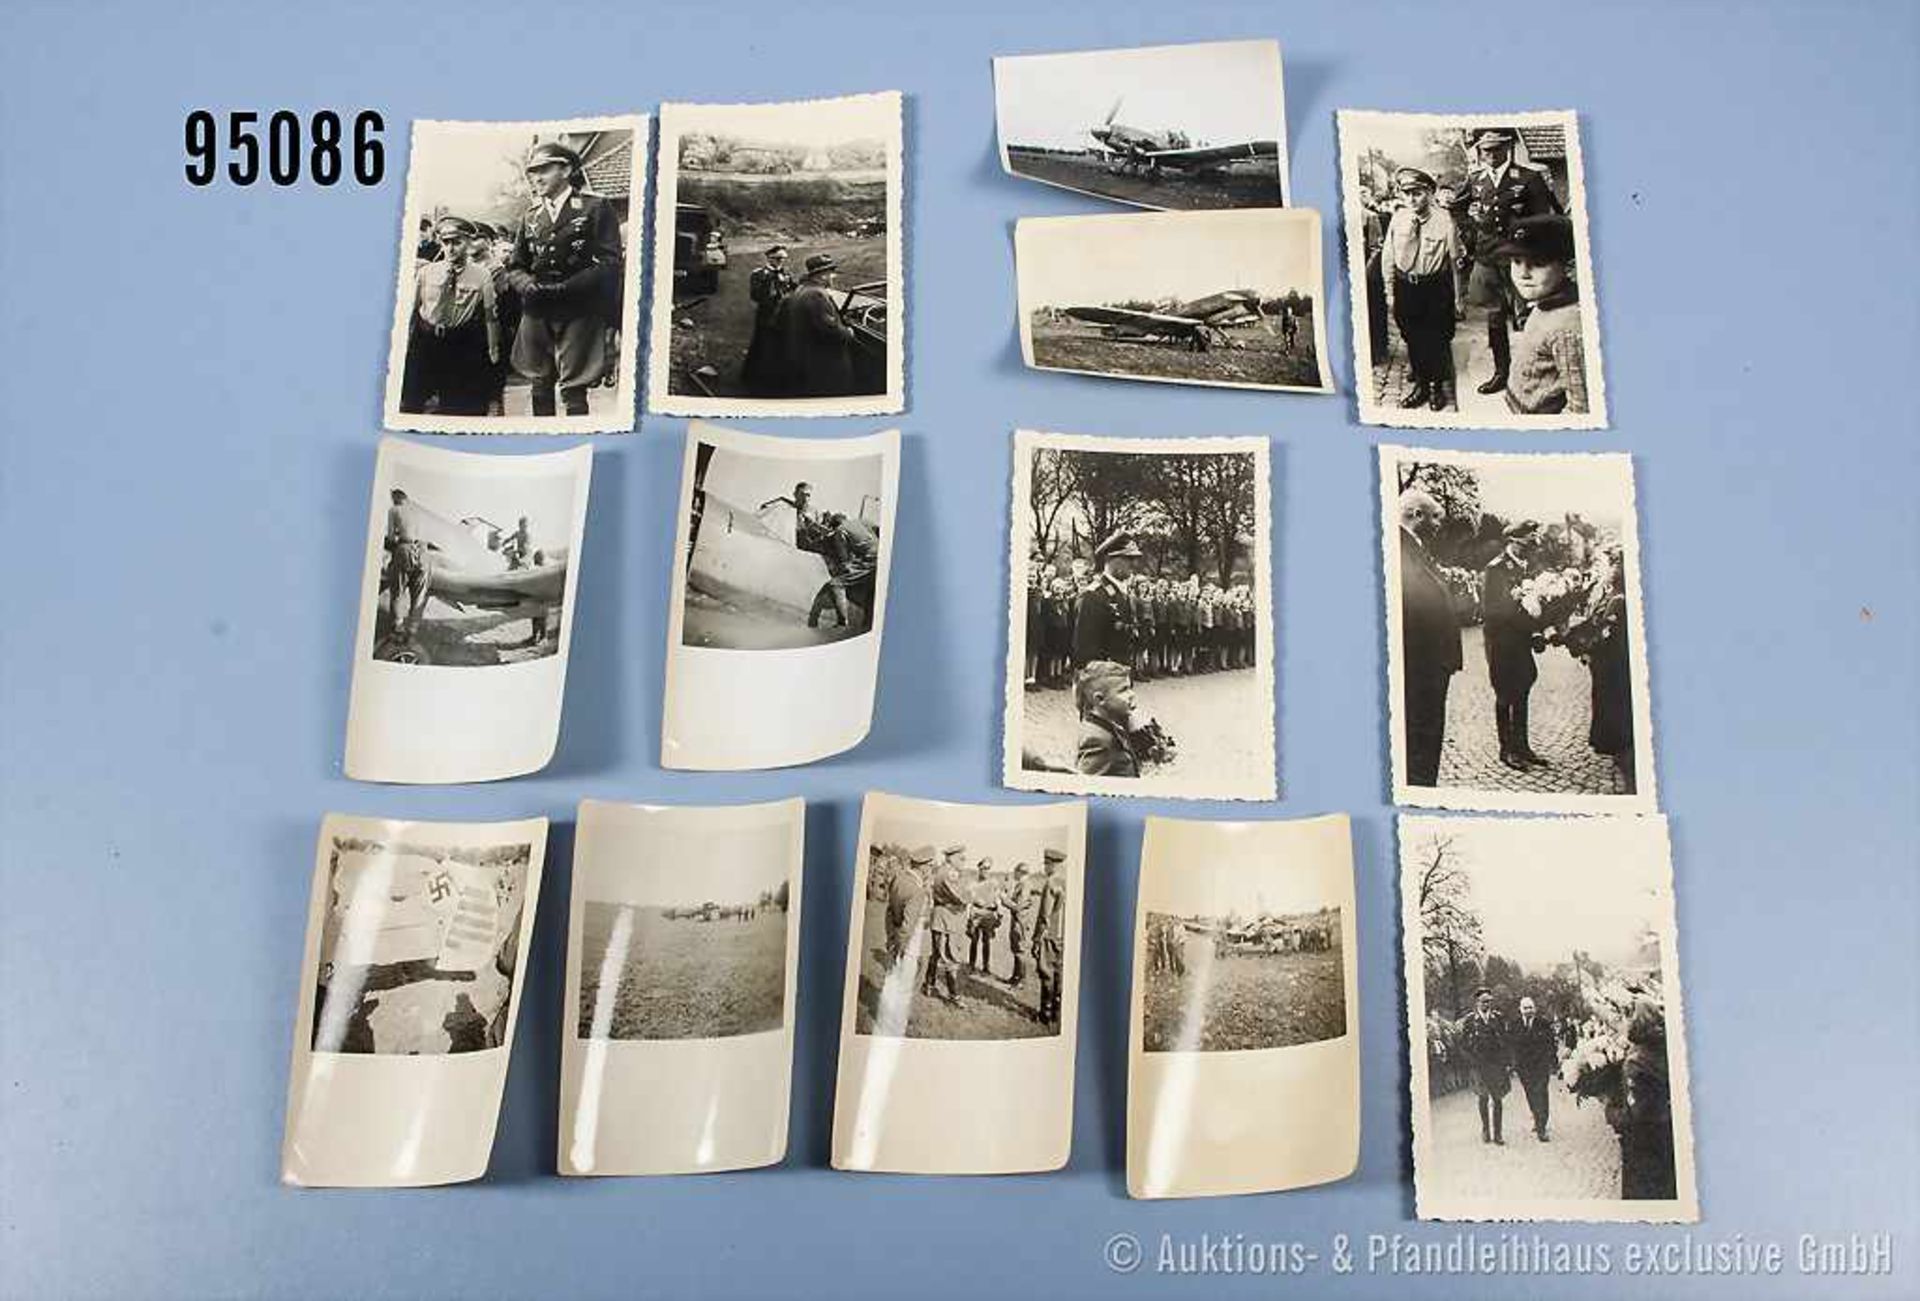 Konv. 6 Fotos des Jagdflieger und Brillantenträger Hermann Graf sowie 8 Fotos von Werner Mölders mit